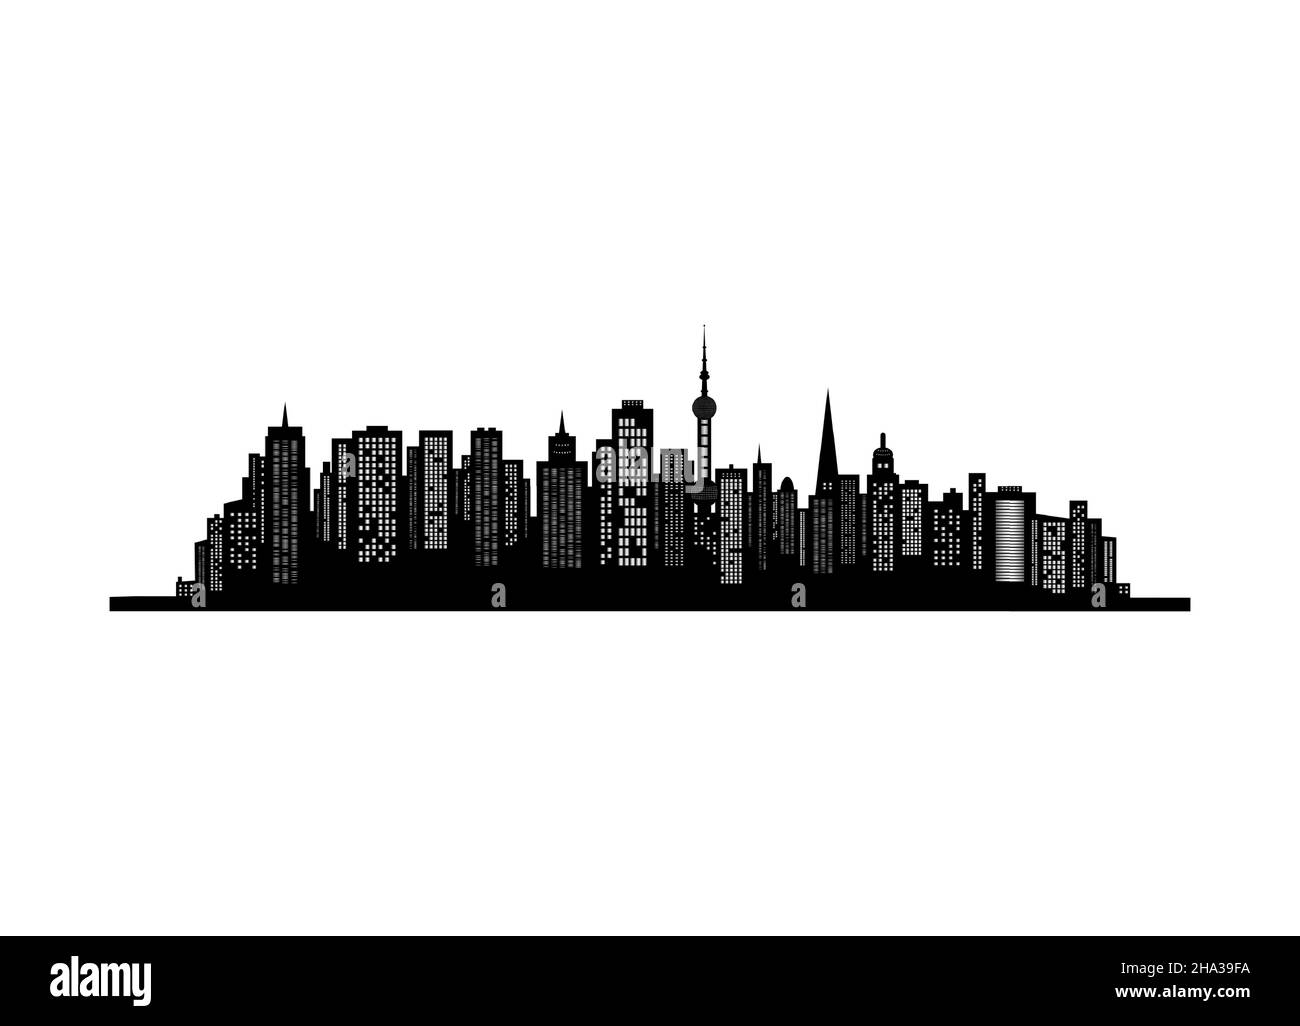 La silhouette della città in stile piatto. Paesaggio urbano. Illustrazione vettoriale. Illustrazione Vettoriale